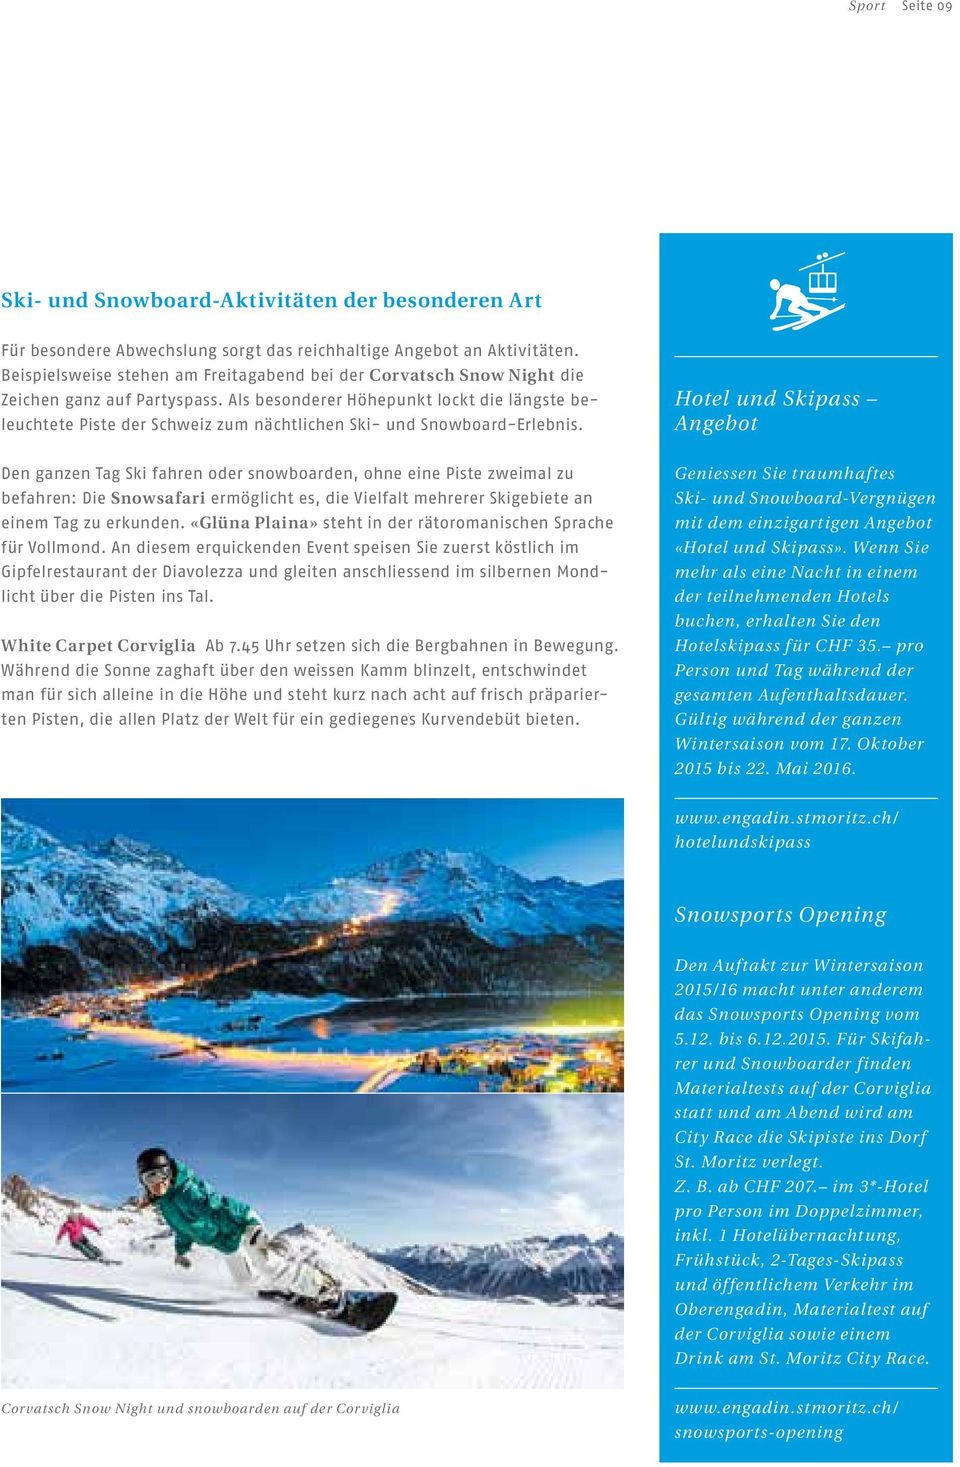 Als besonderer Höhepunkt lockt die längste beleuchtete Piste der Schweiz zum nächtlichen Ski- und Snowboard-Erlebnis.